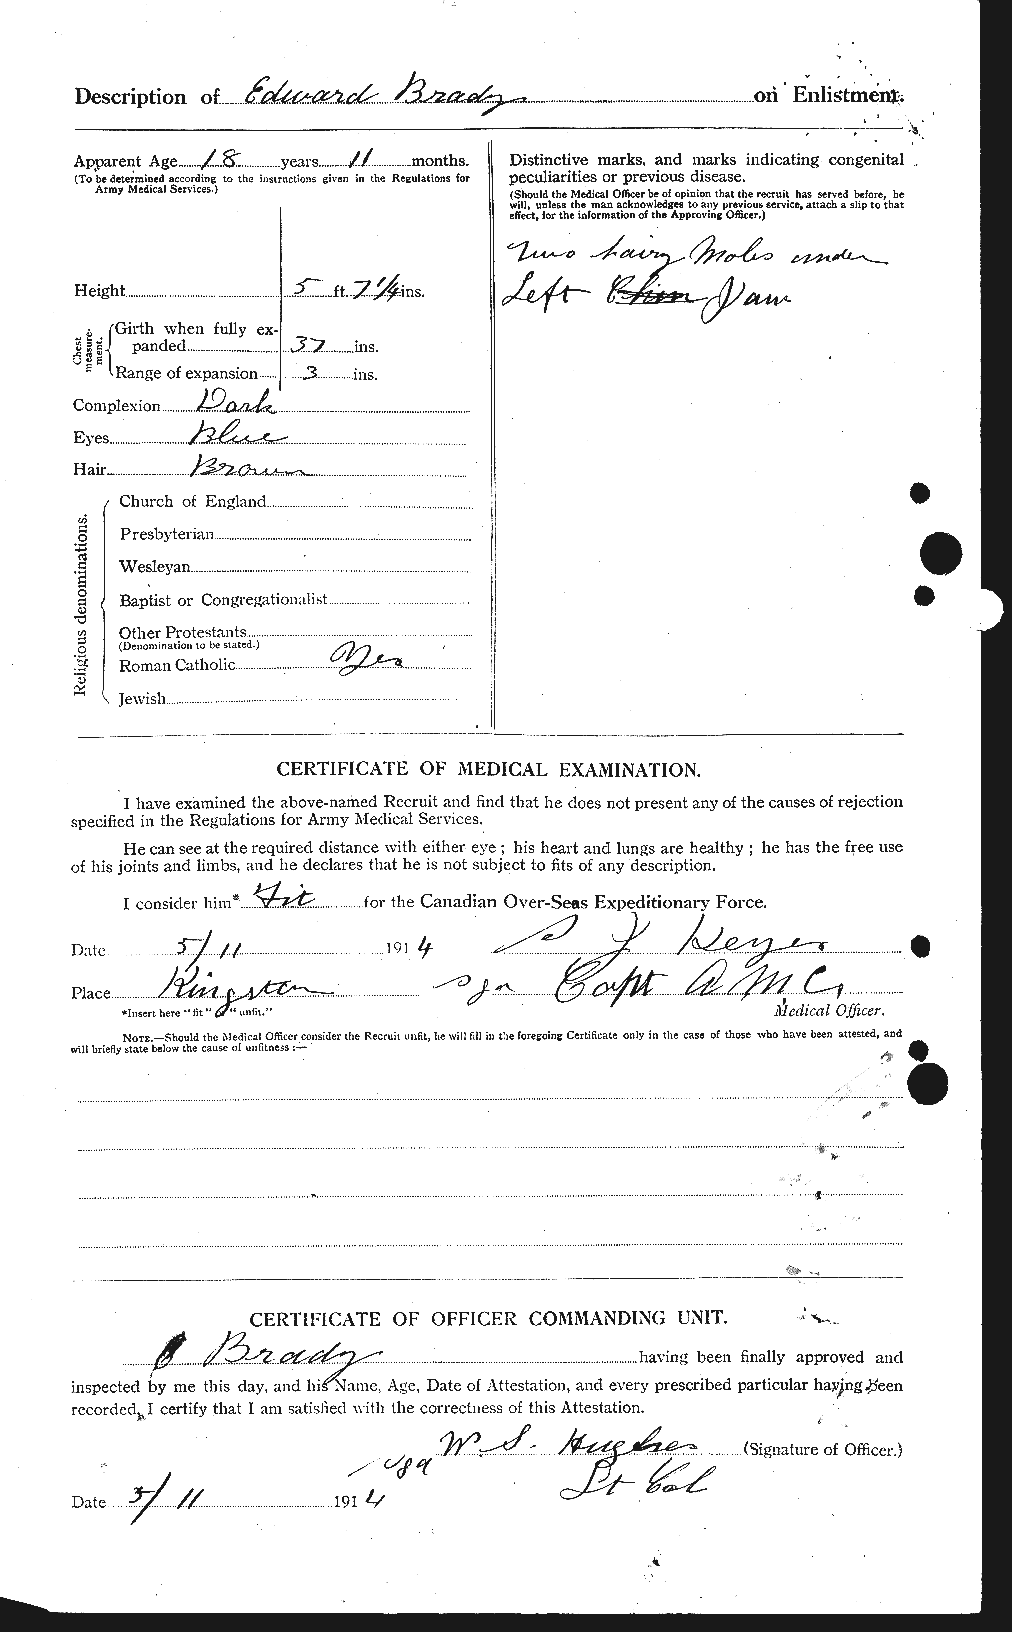 Dossiers du Personnel de la Première Guerre mondiale - CEC 257256b